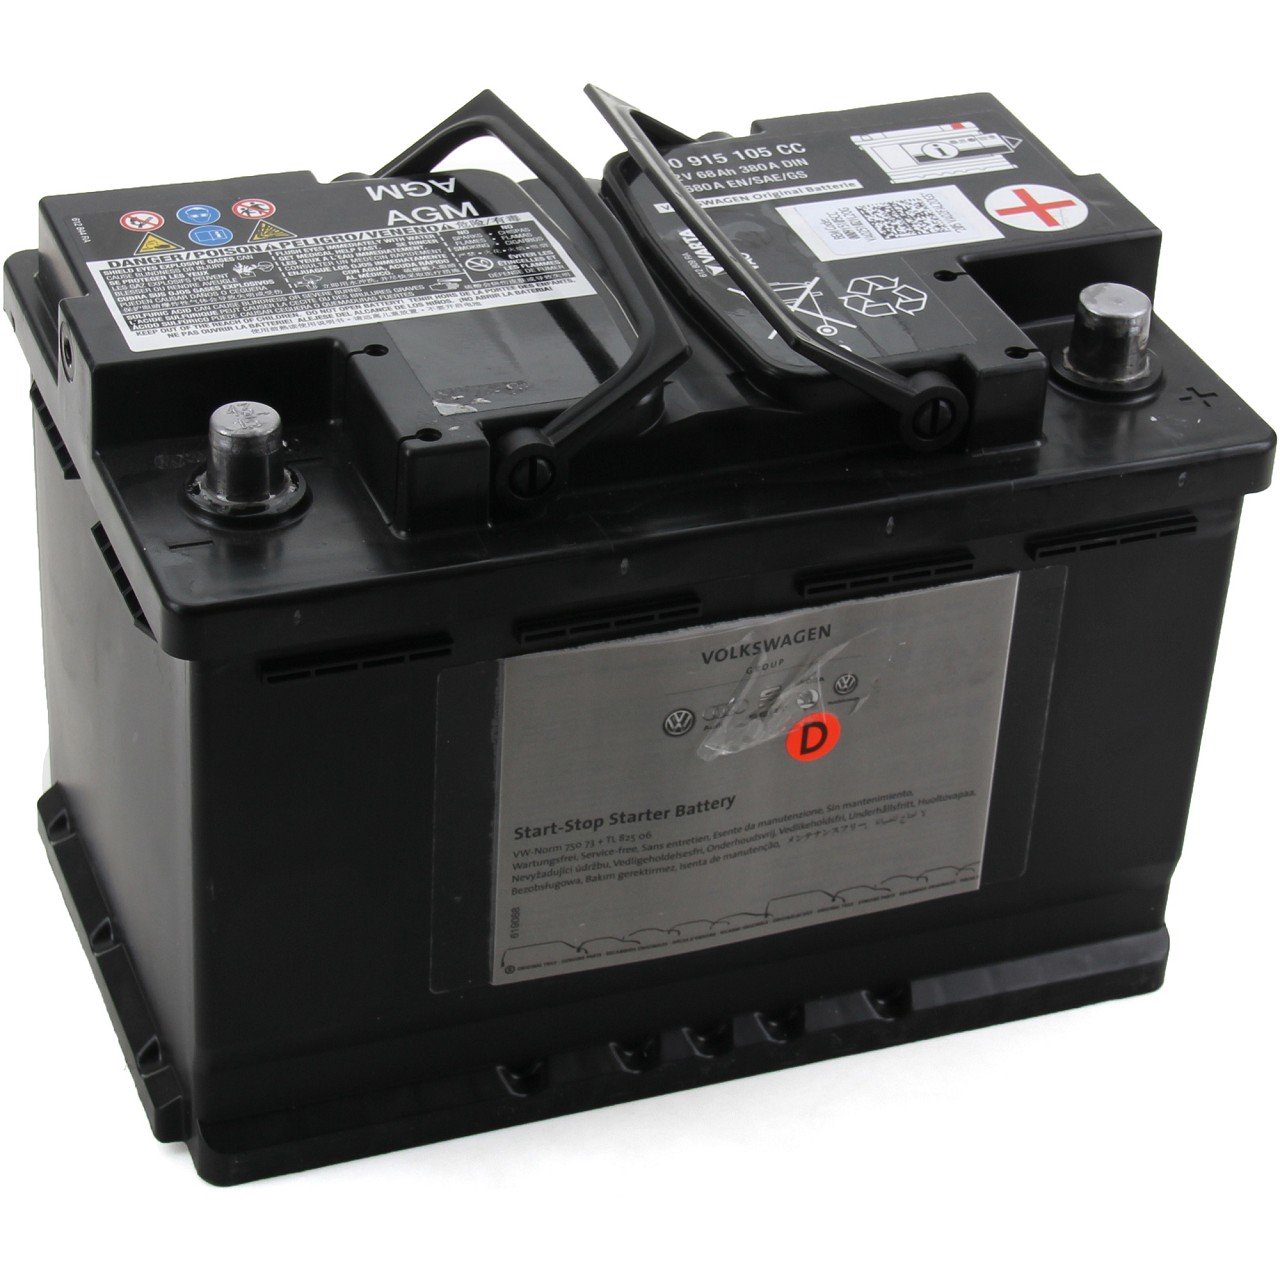 ORIGINAL VW Autobatterie Batterie Starterbatterie 12V 68Ah 380/680A 000915105CC